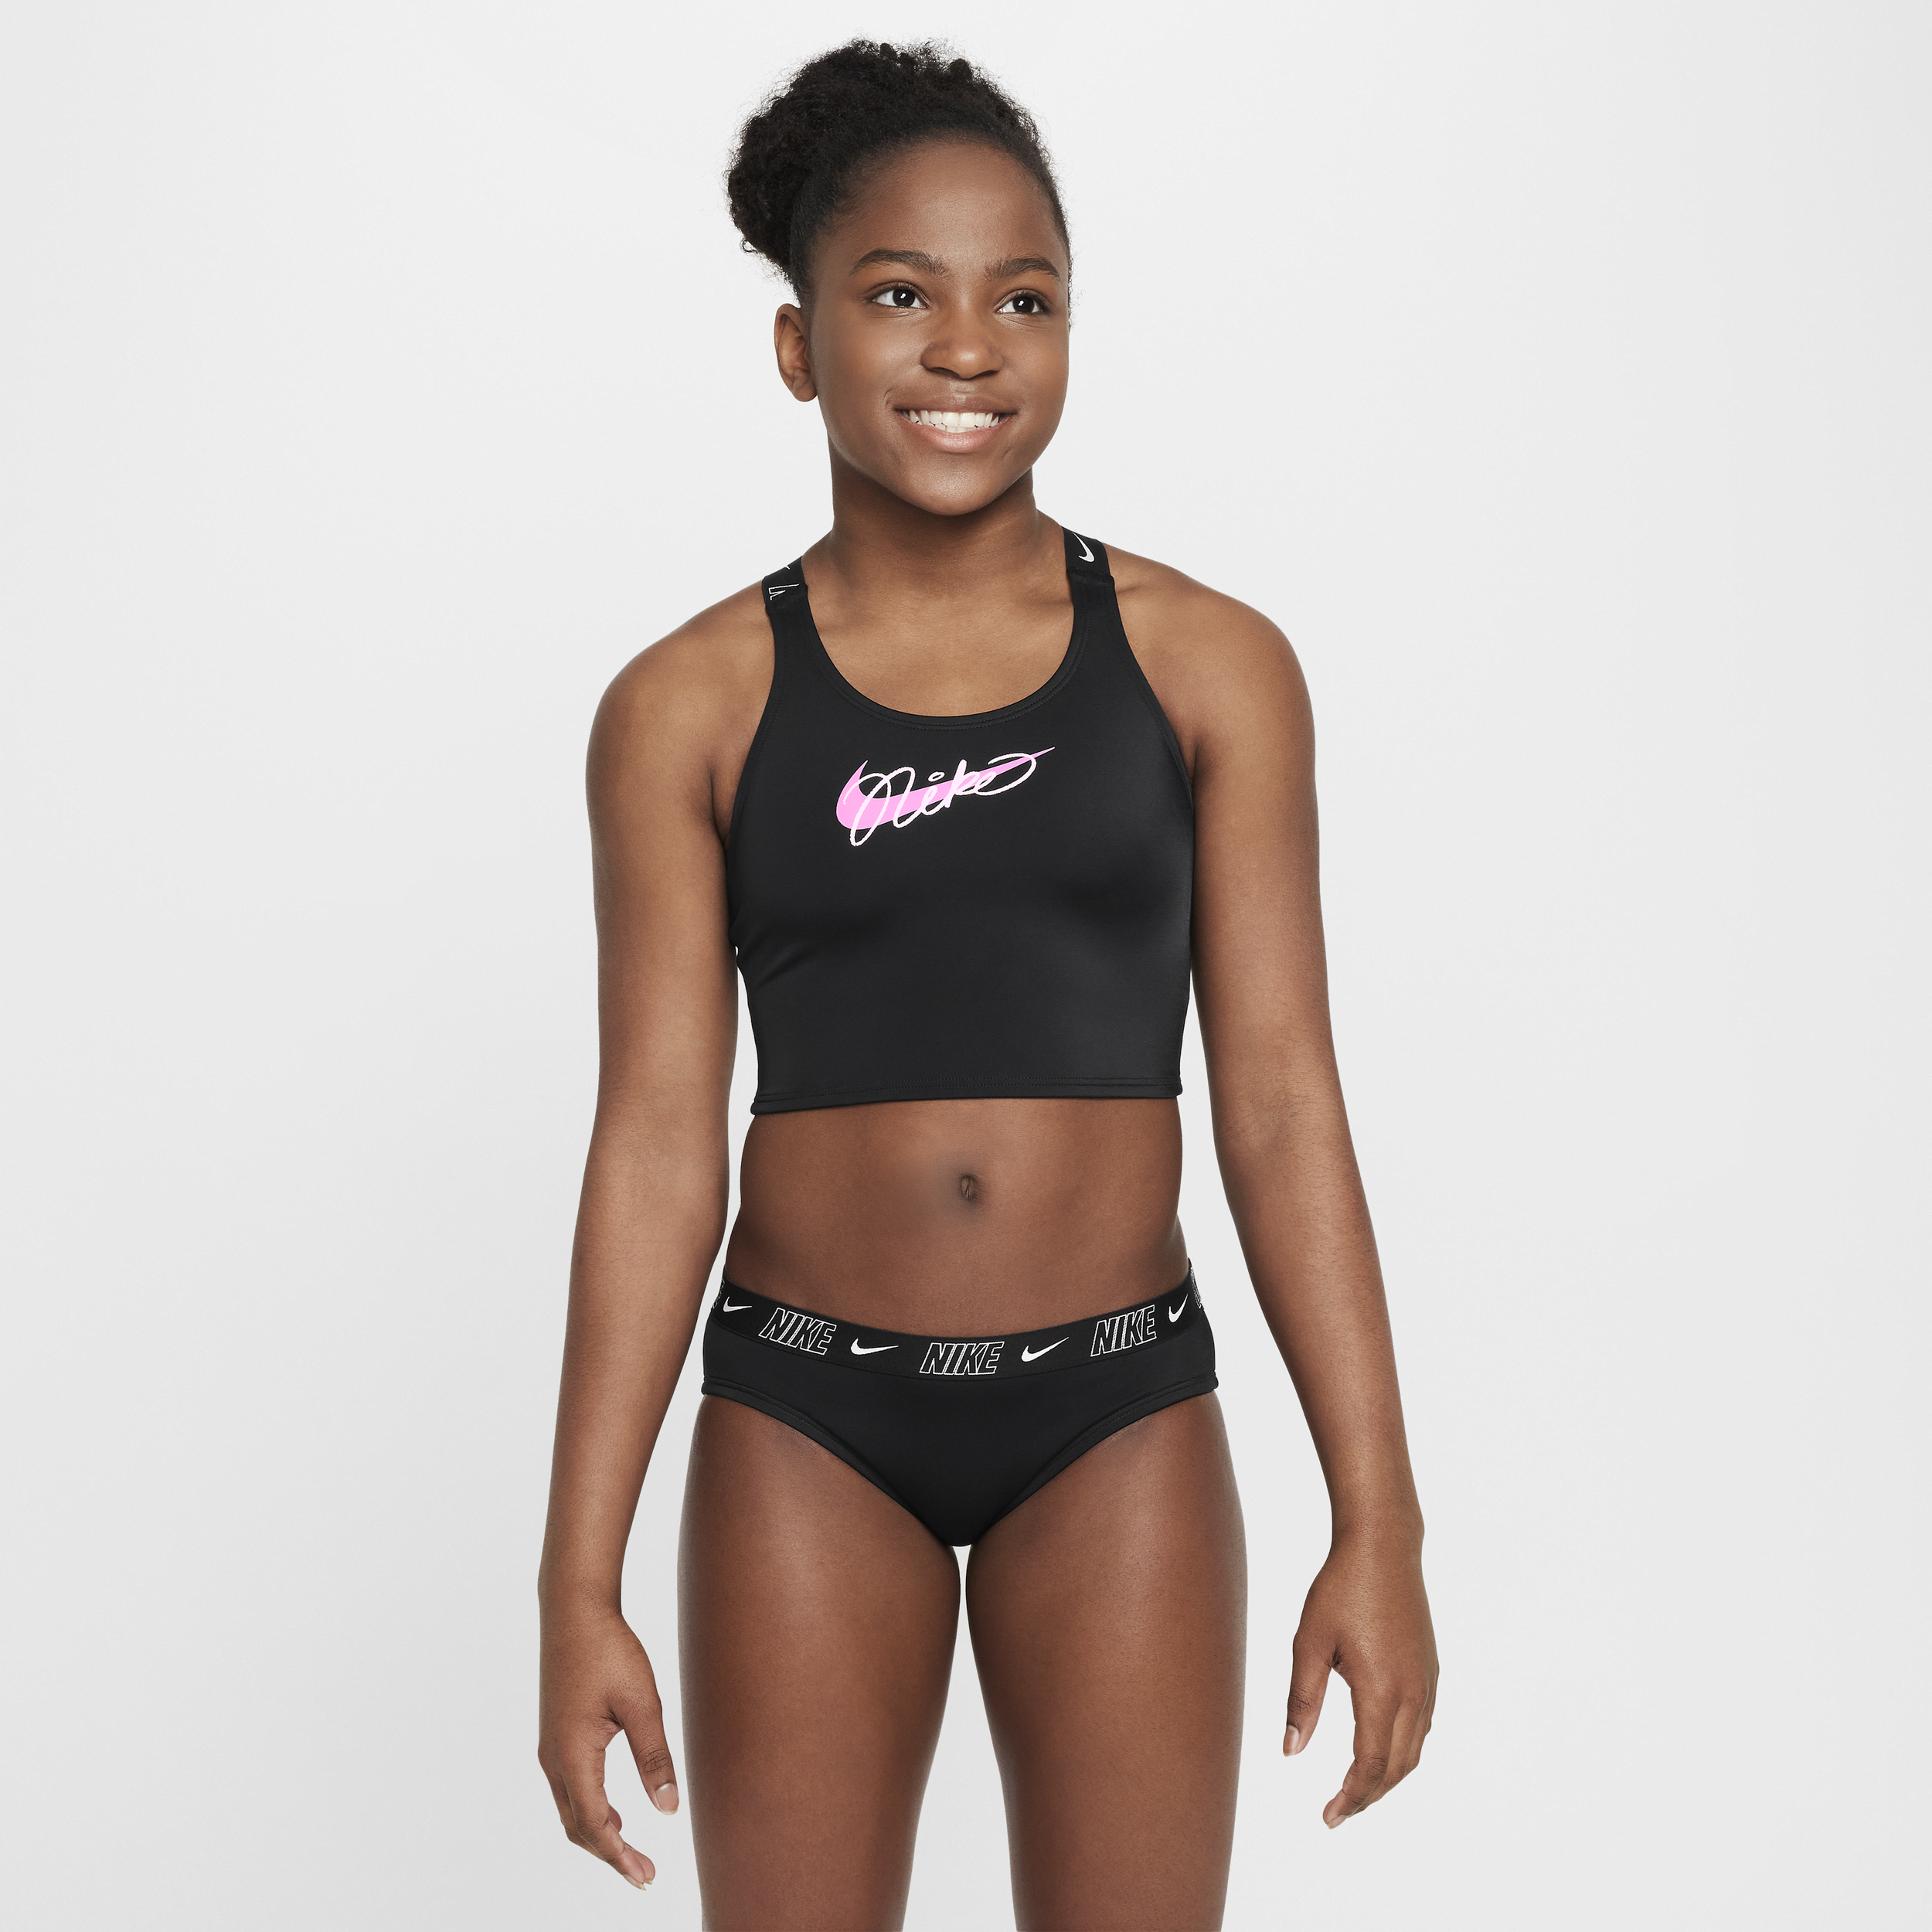 Nike Swim midkiniset met gekruiste bandjes voor meisjes Zwart